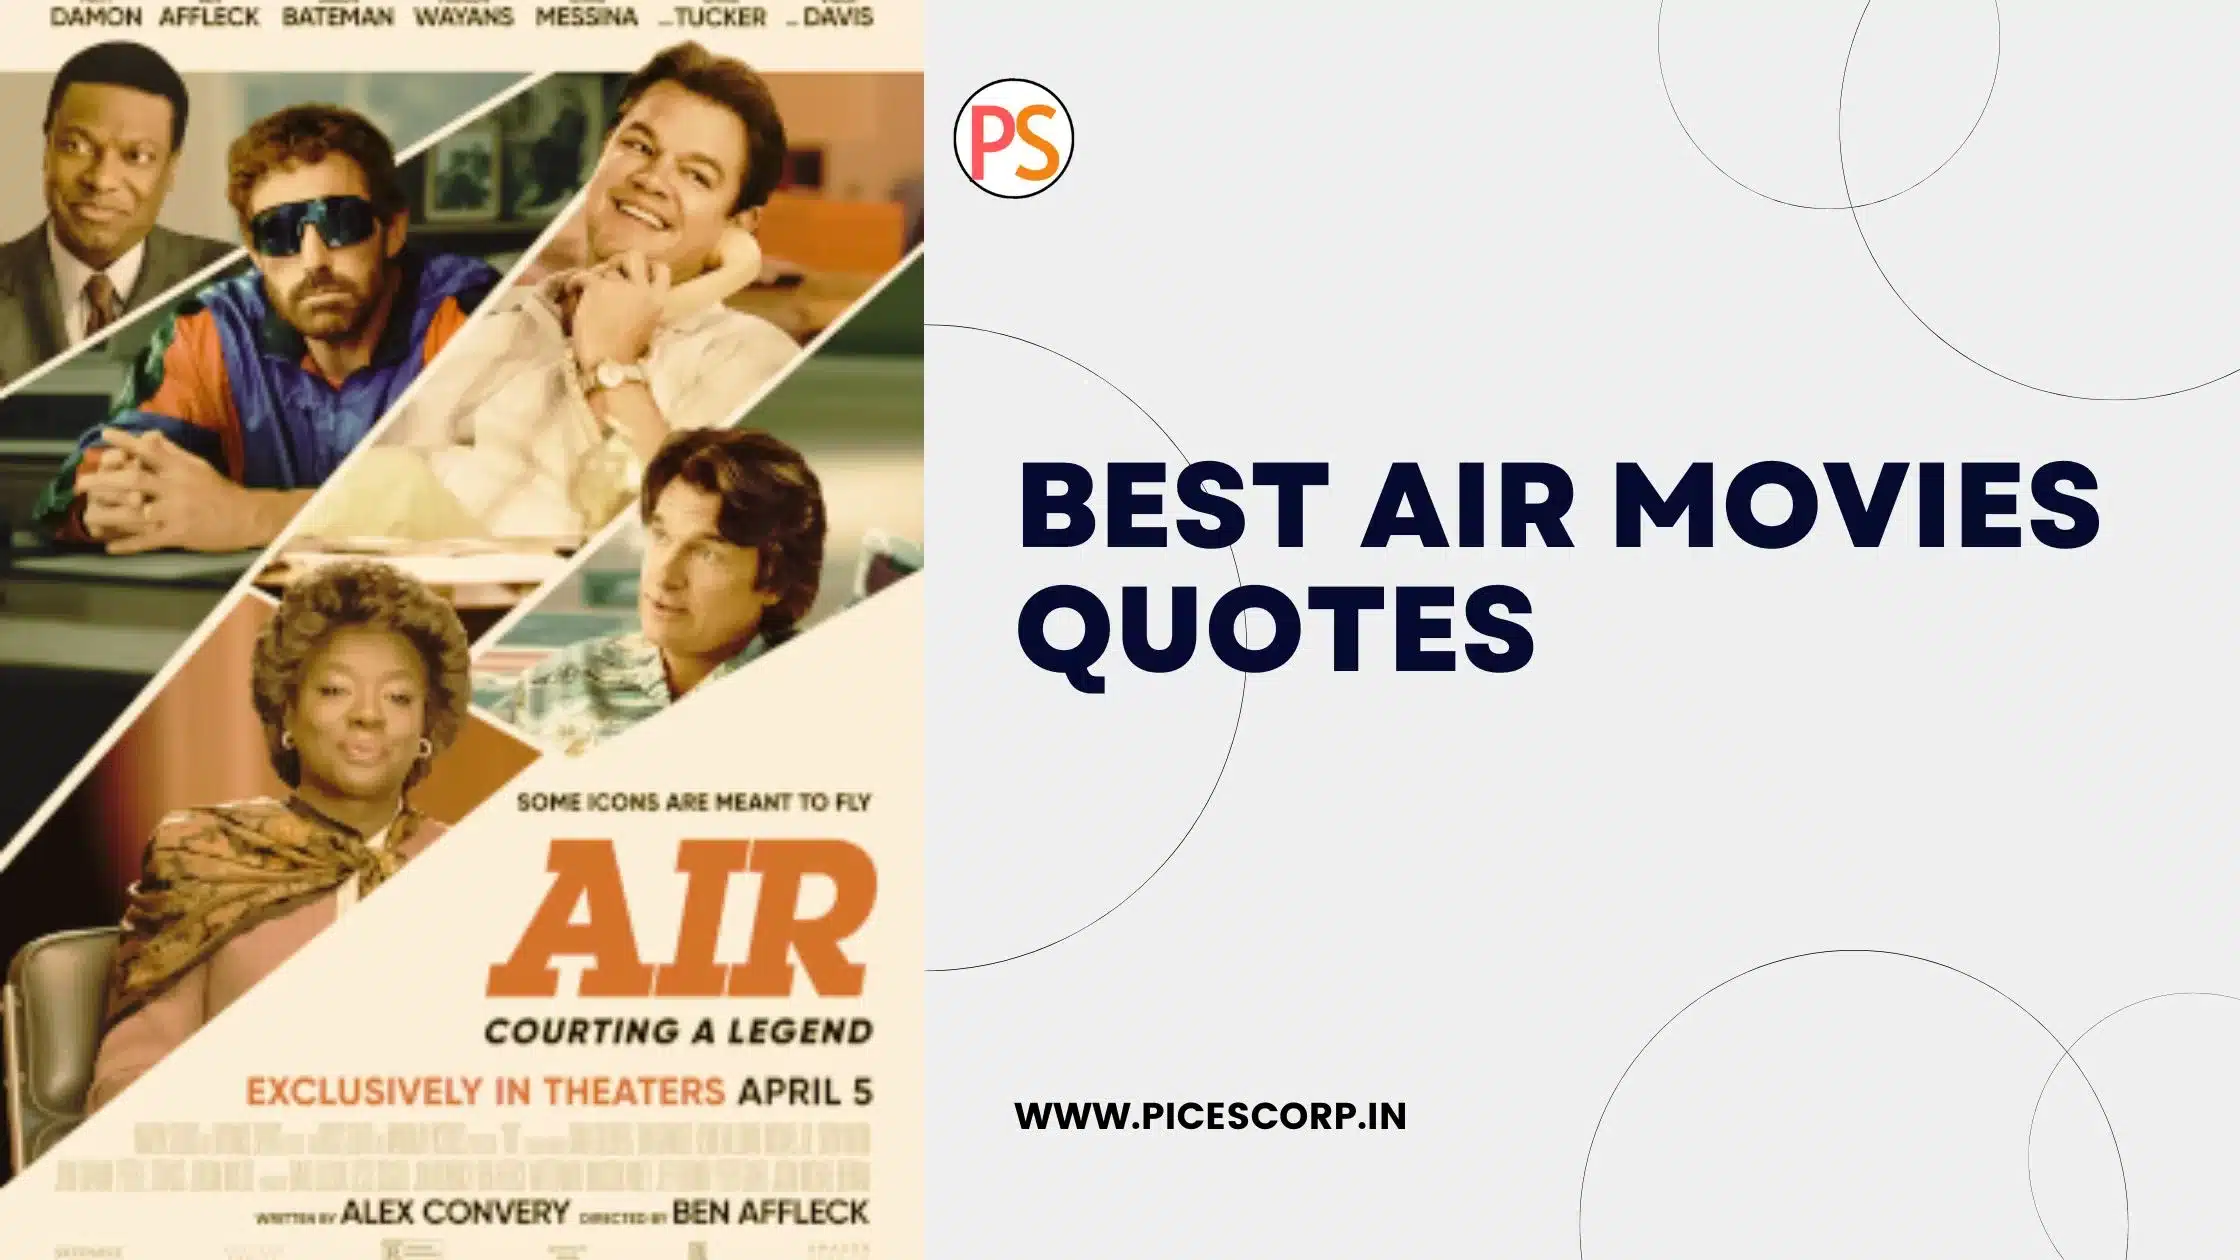 Air movie quotes